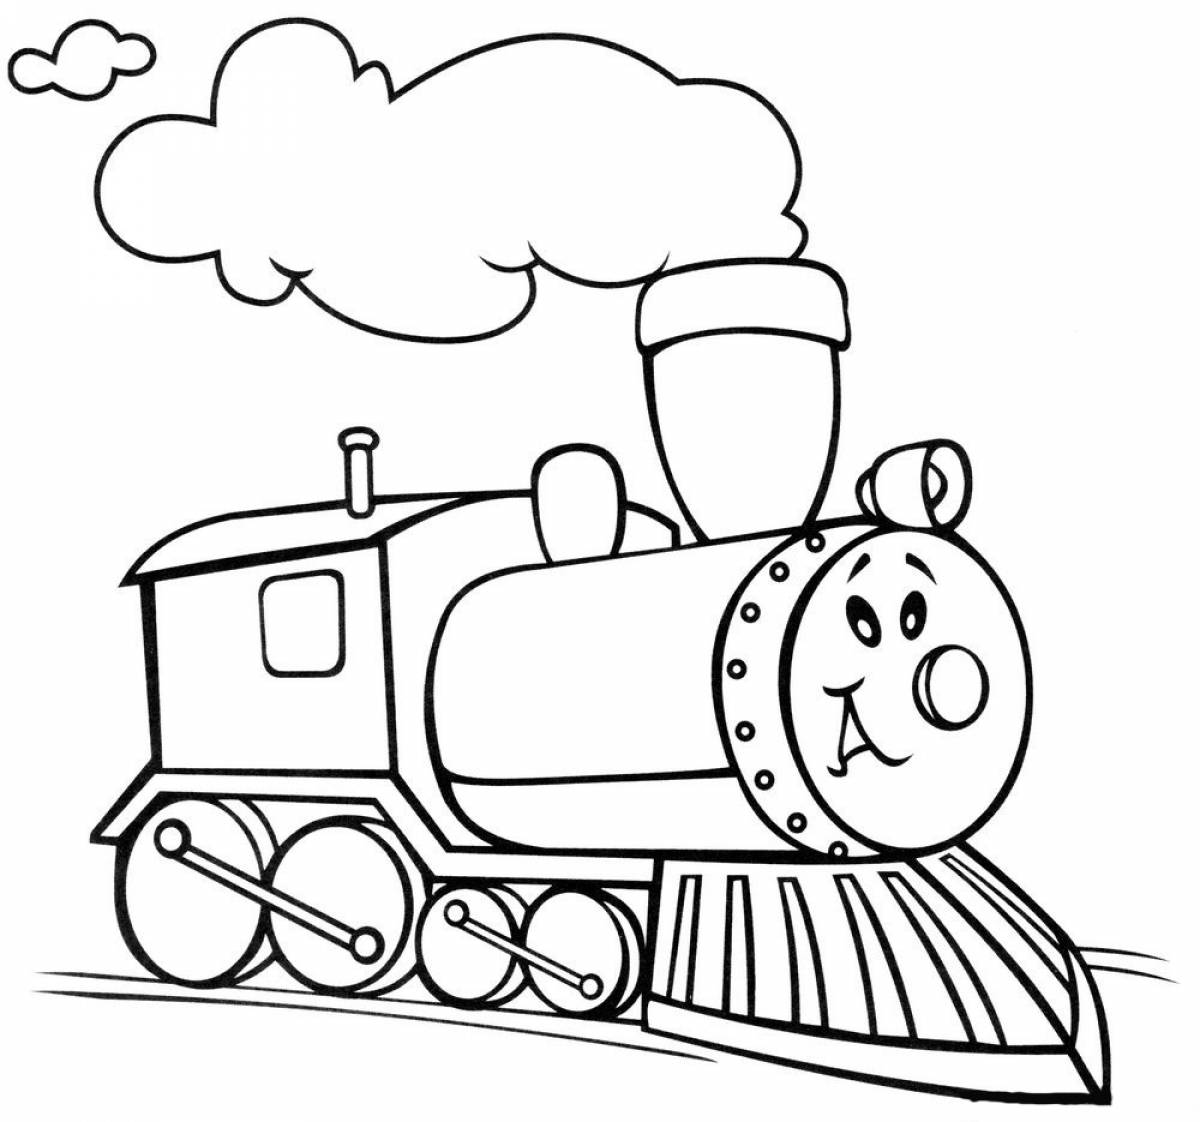 Cheerful steam locomotive